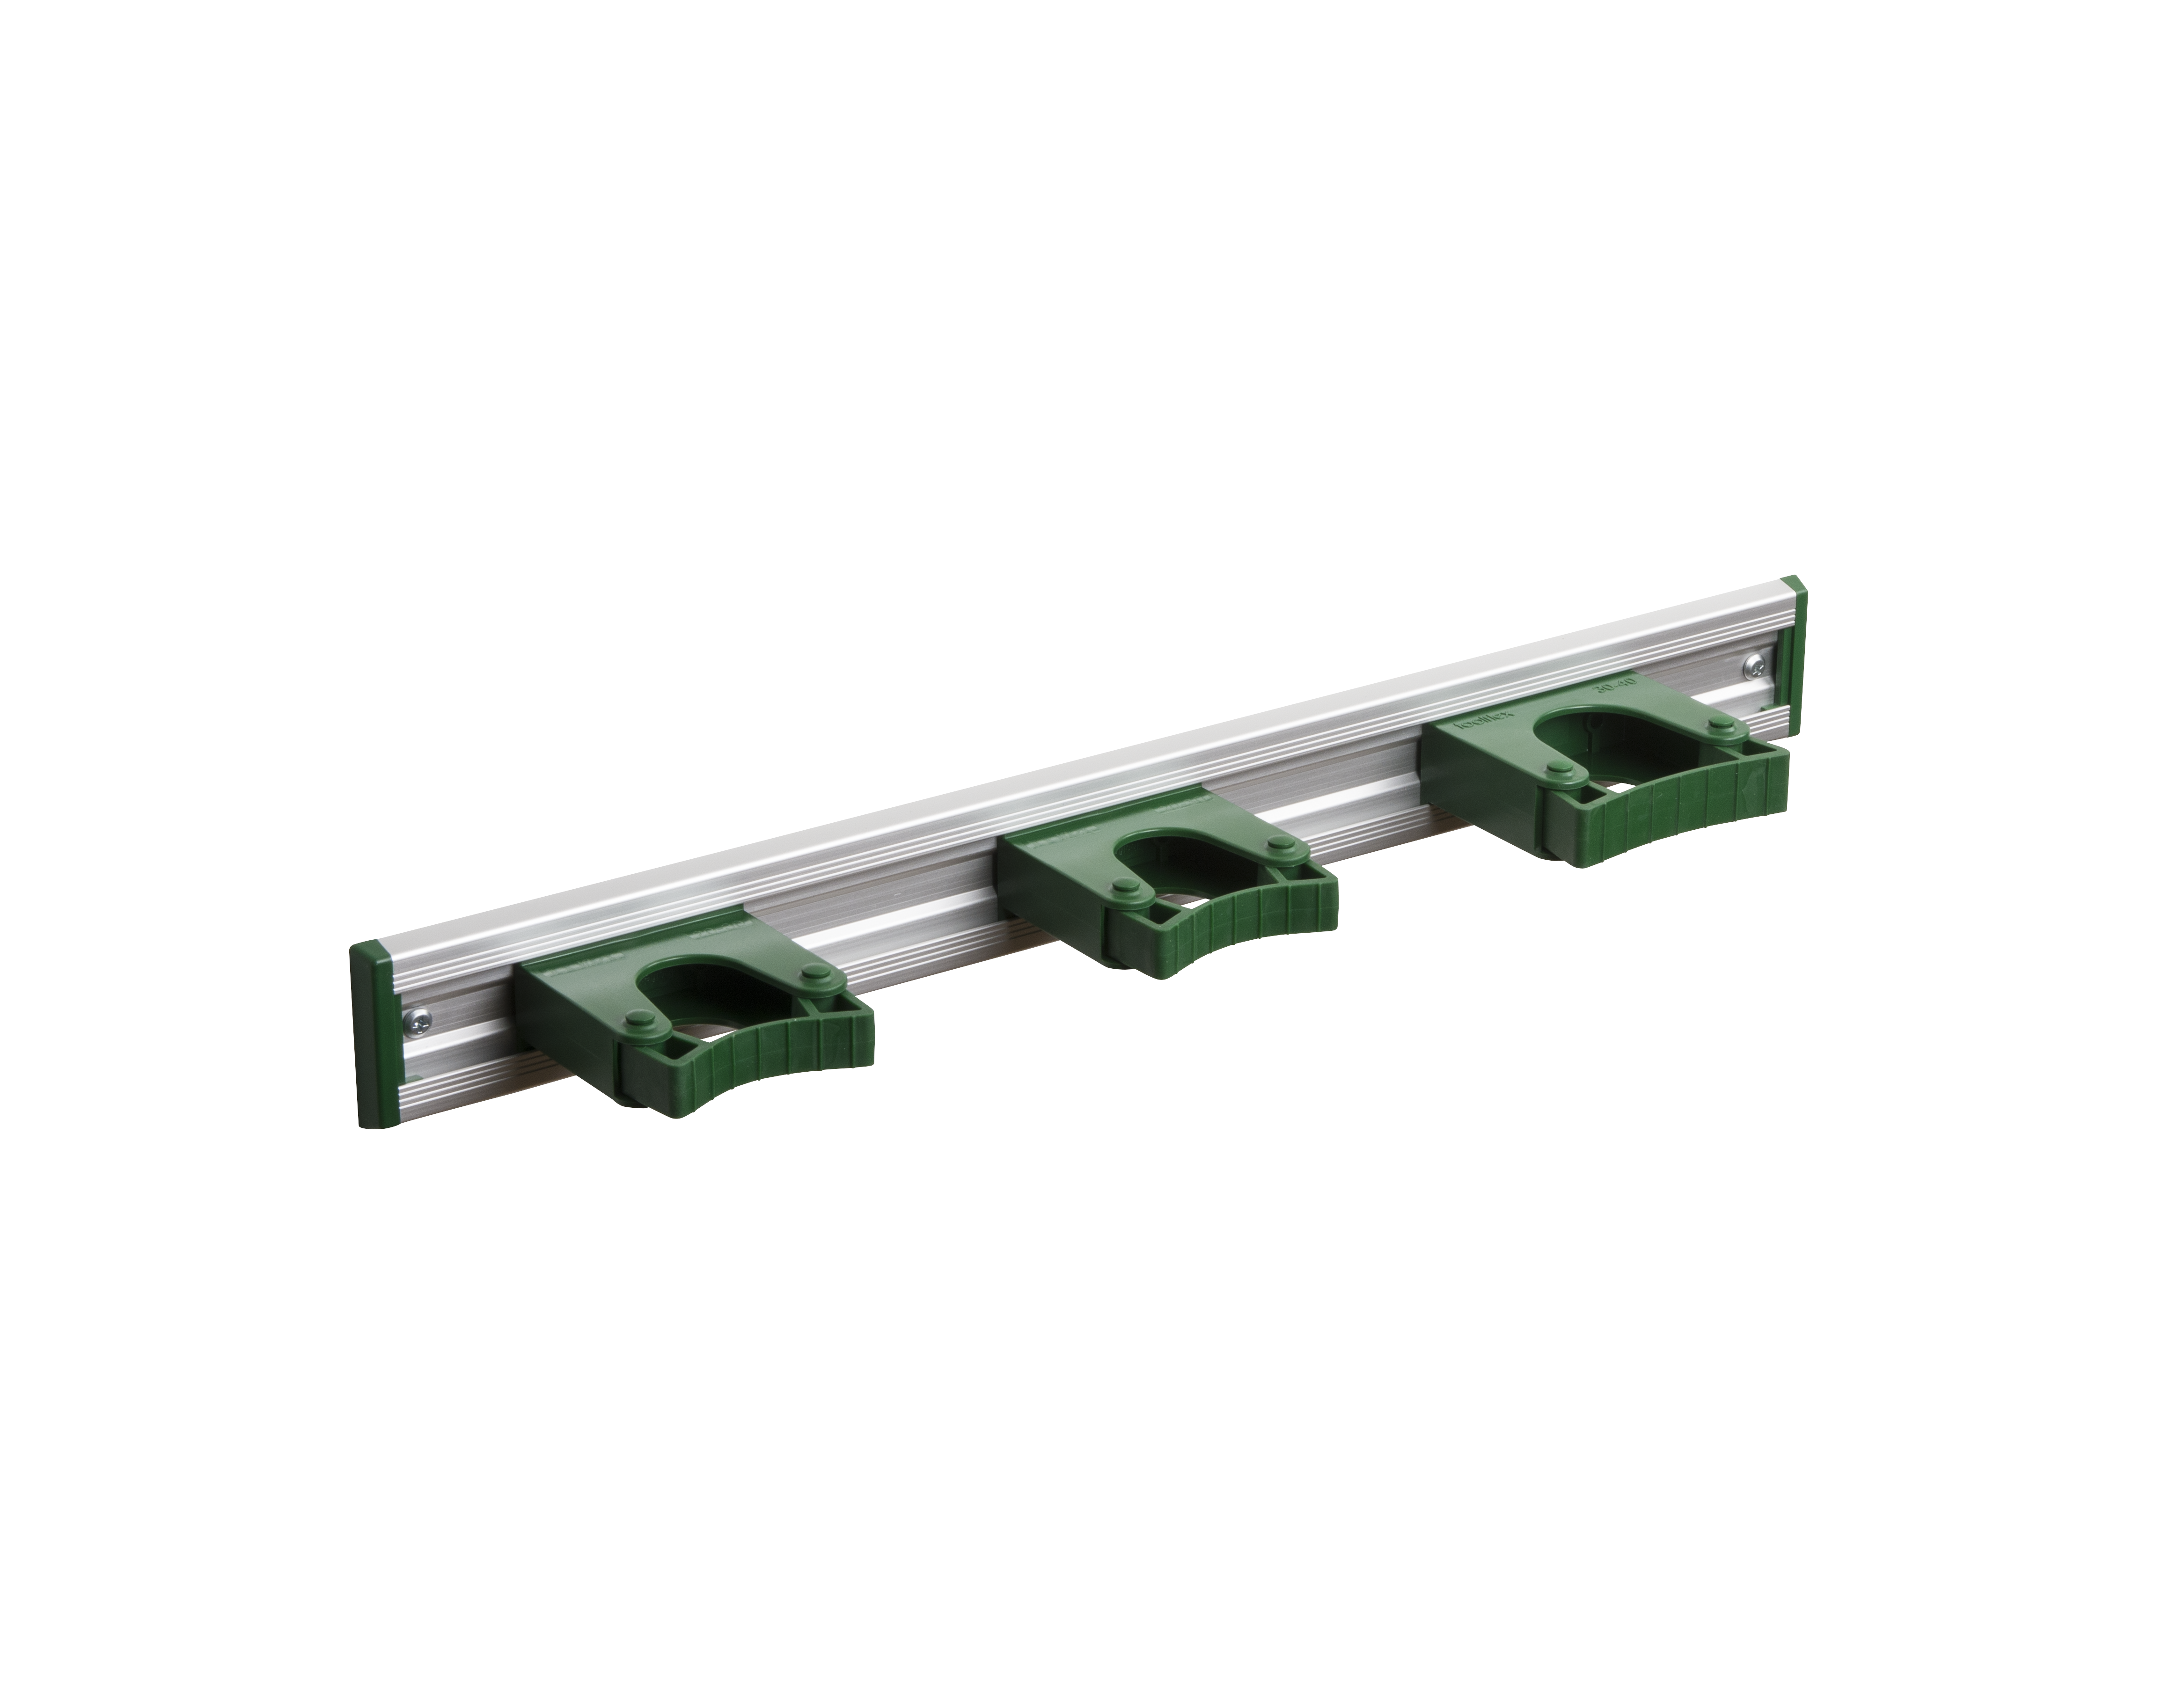 Toolflex Alu-Schiene 50 cm mit grünen Endstücken, bestückt mit 3 grünen Haltern (2 x 20-30 mm, 1 x 30-40 mm)